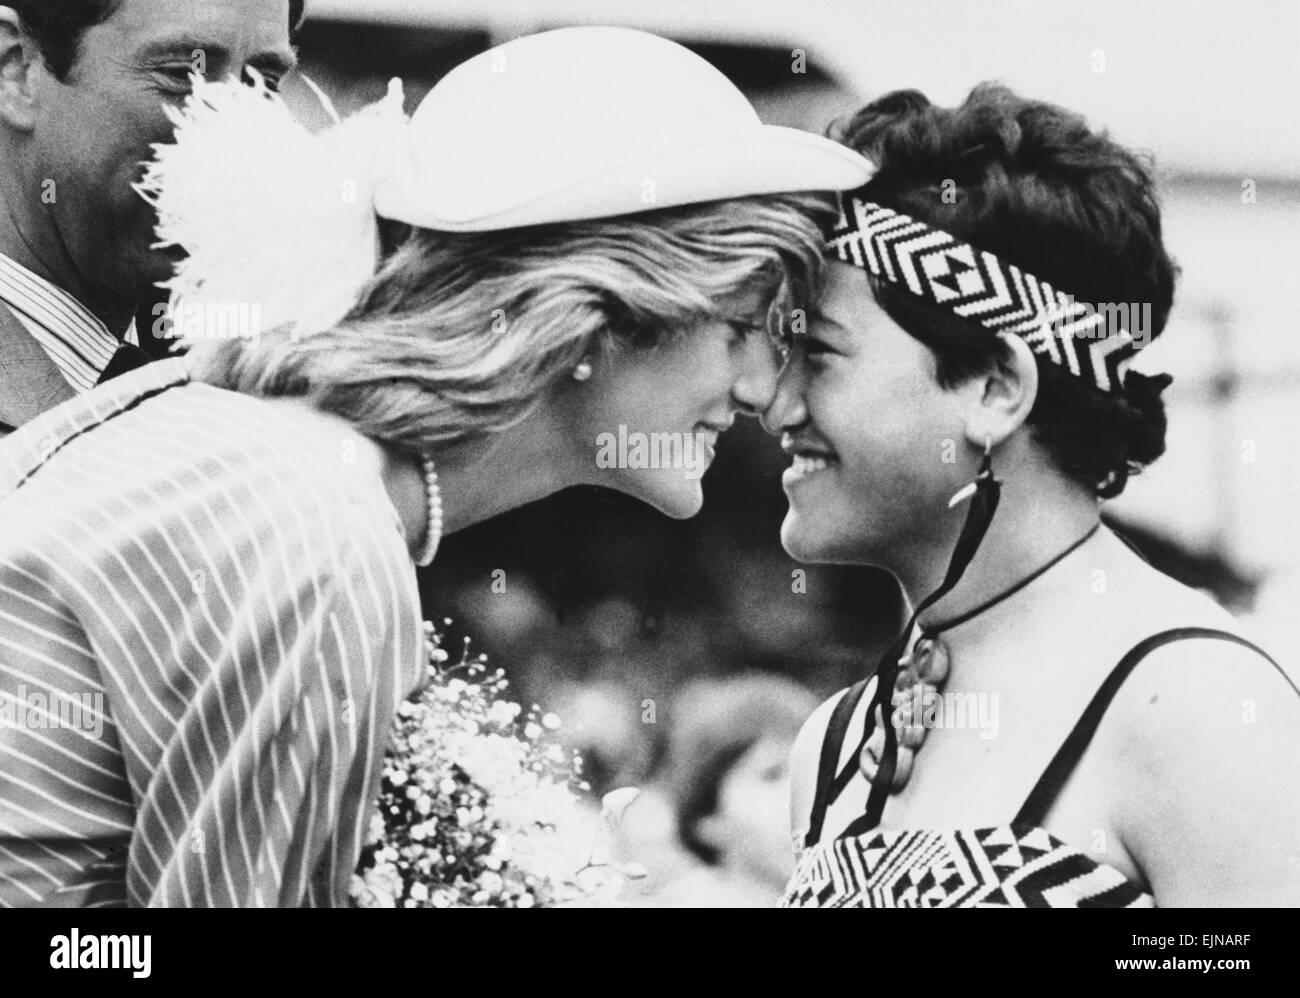 Prinzessin Diana reibt Nasen mit sechzehn Jahre alten Maori Susan Piper, als sie bei ihrer Ankunft in Auckland, Neuseeland begrüßt wird. 18. April 1983. Stockfoto